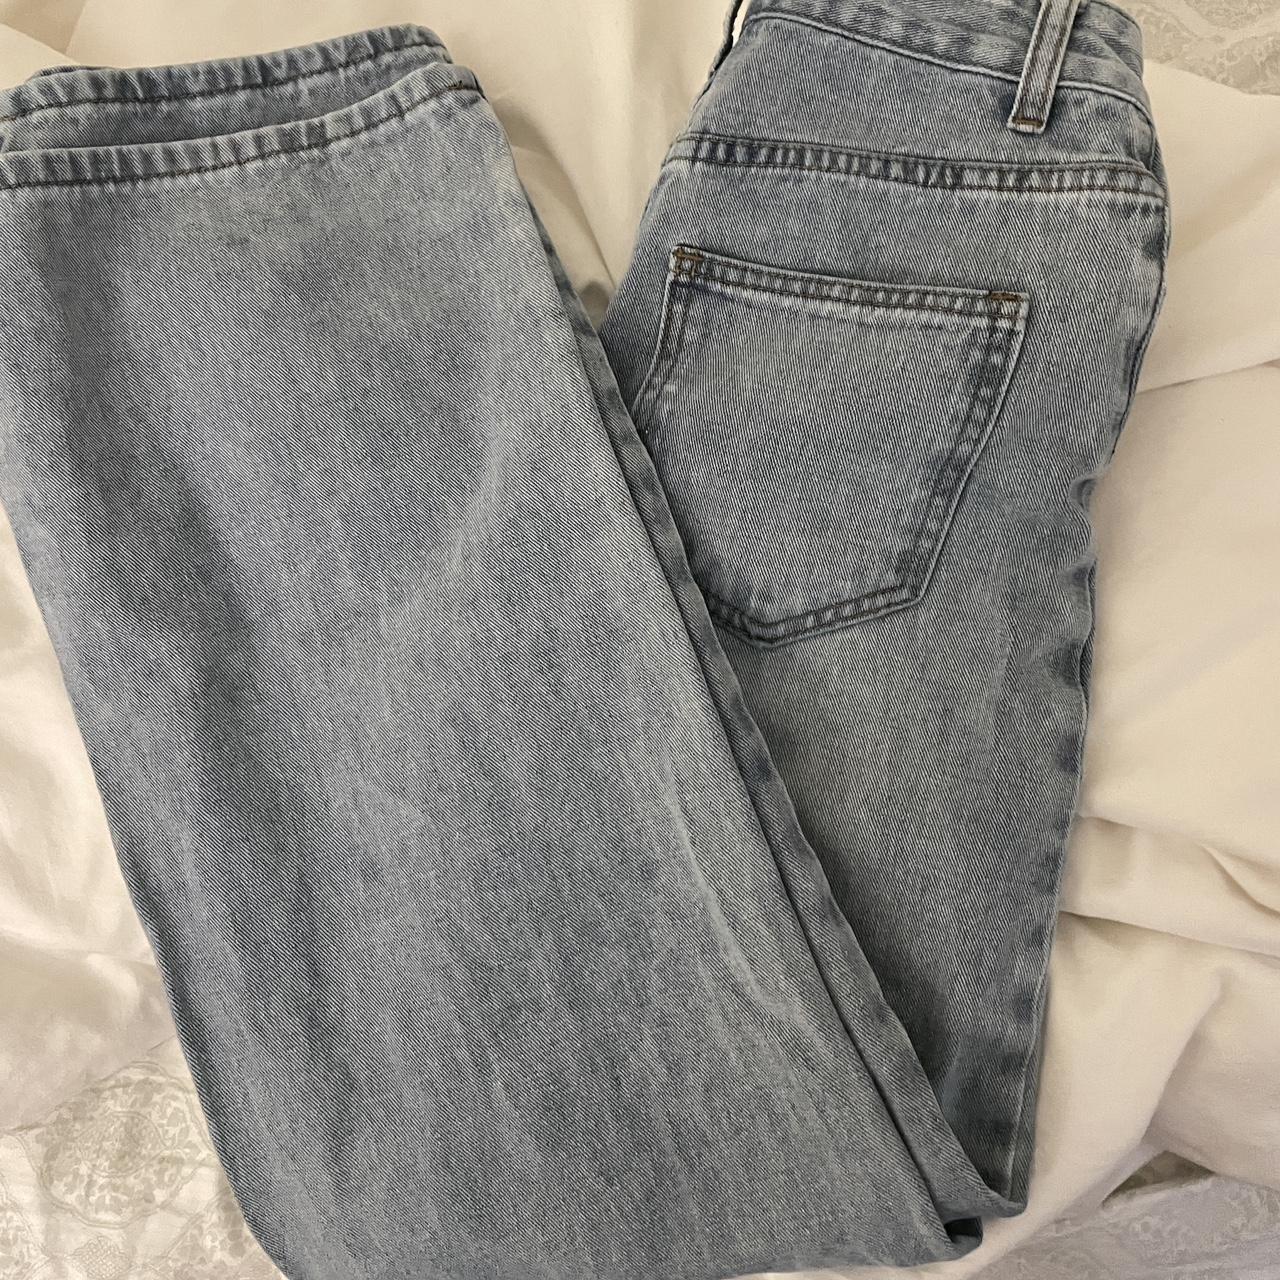 Wide leg jeans from shein #boohoo Brandy melville... - Depop